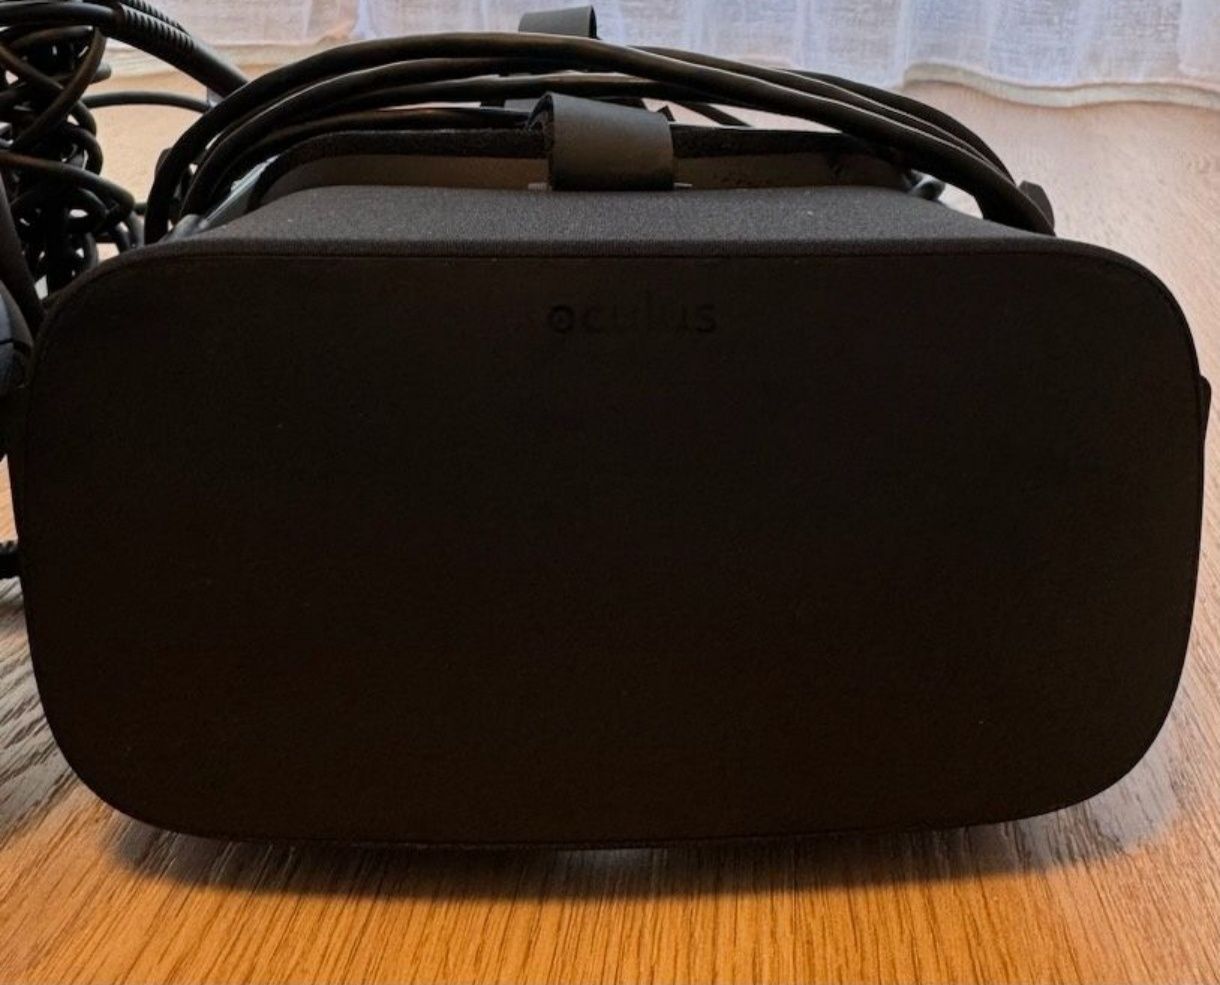 VR oculus rift wirtualny świat